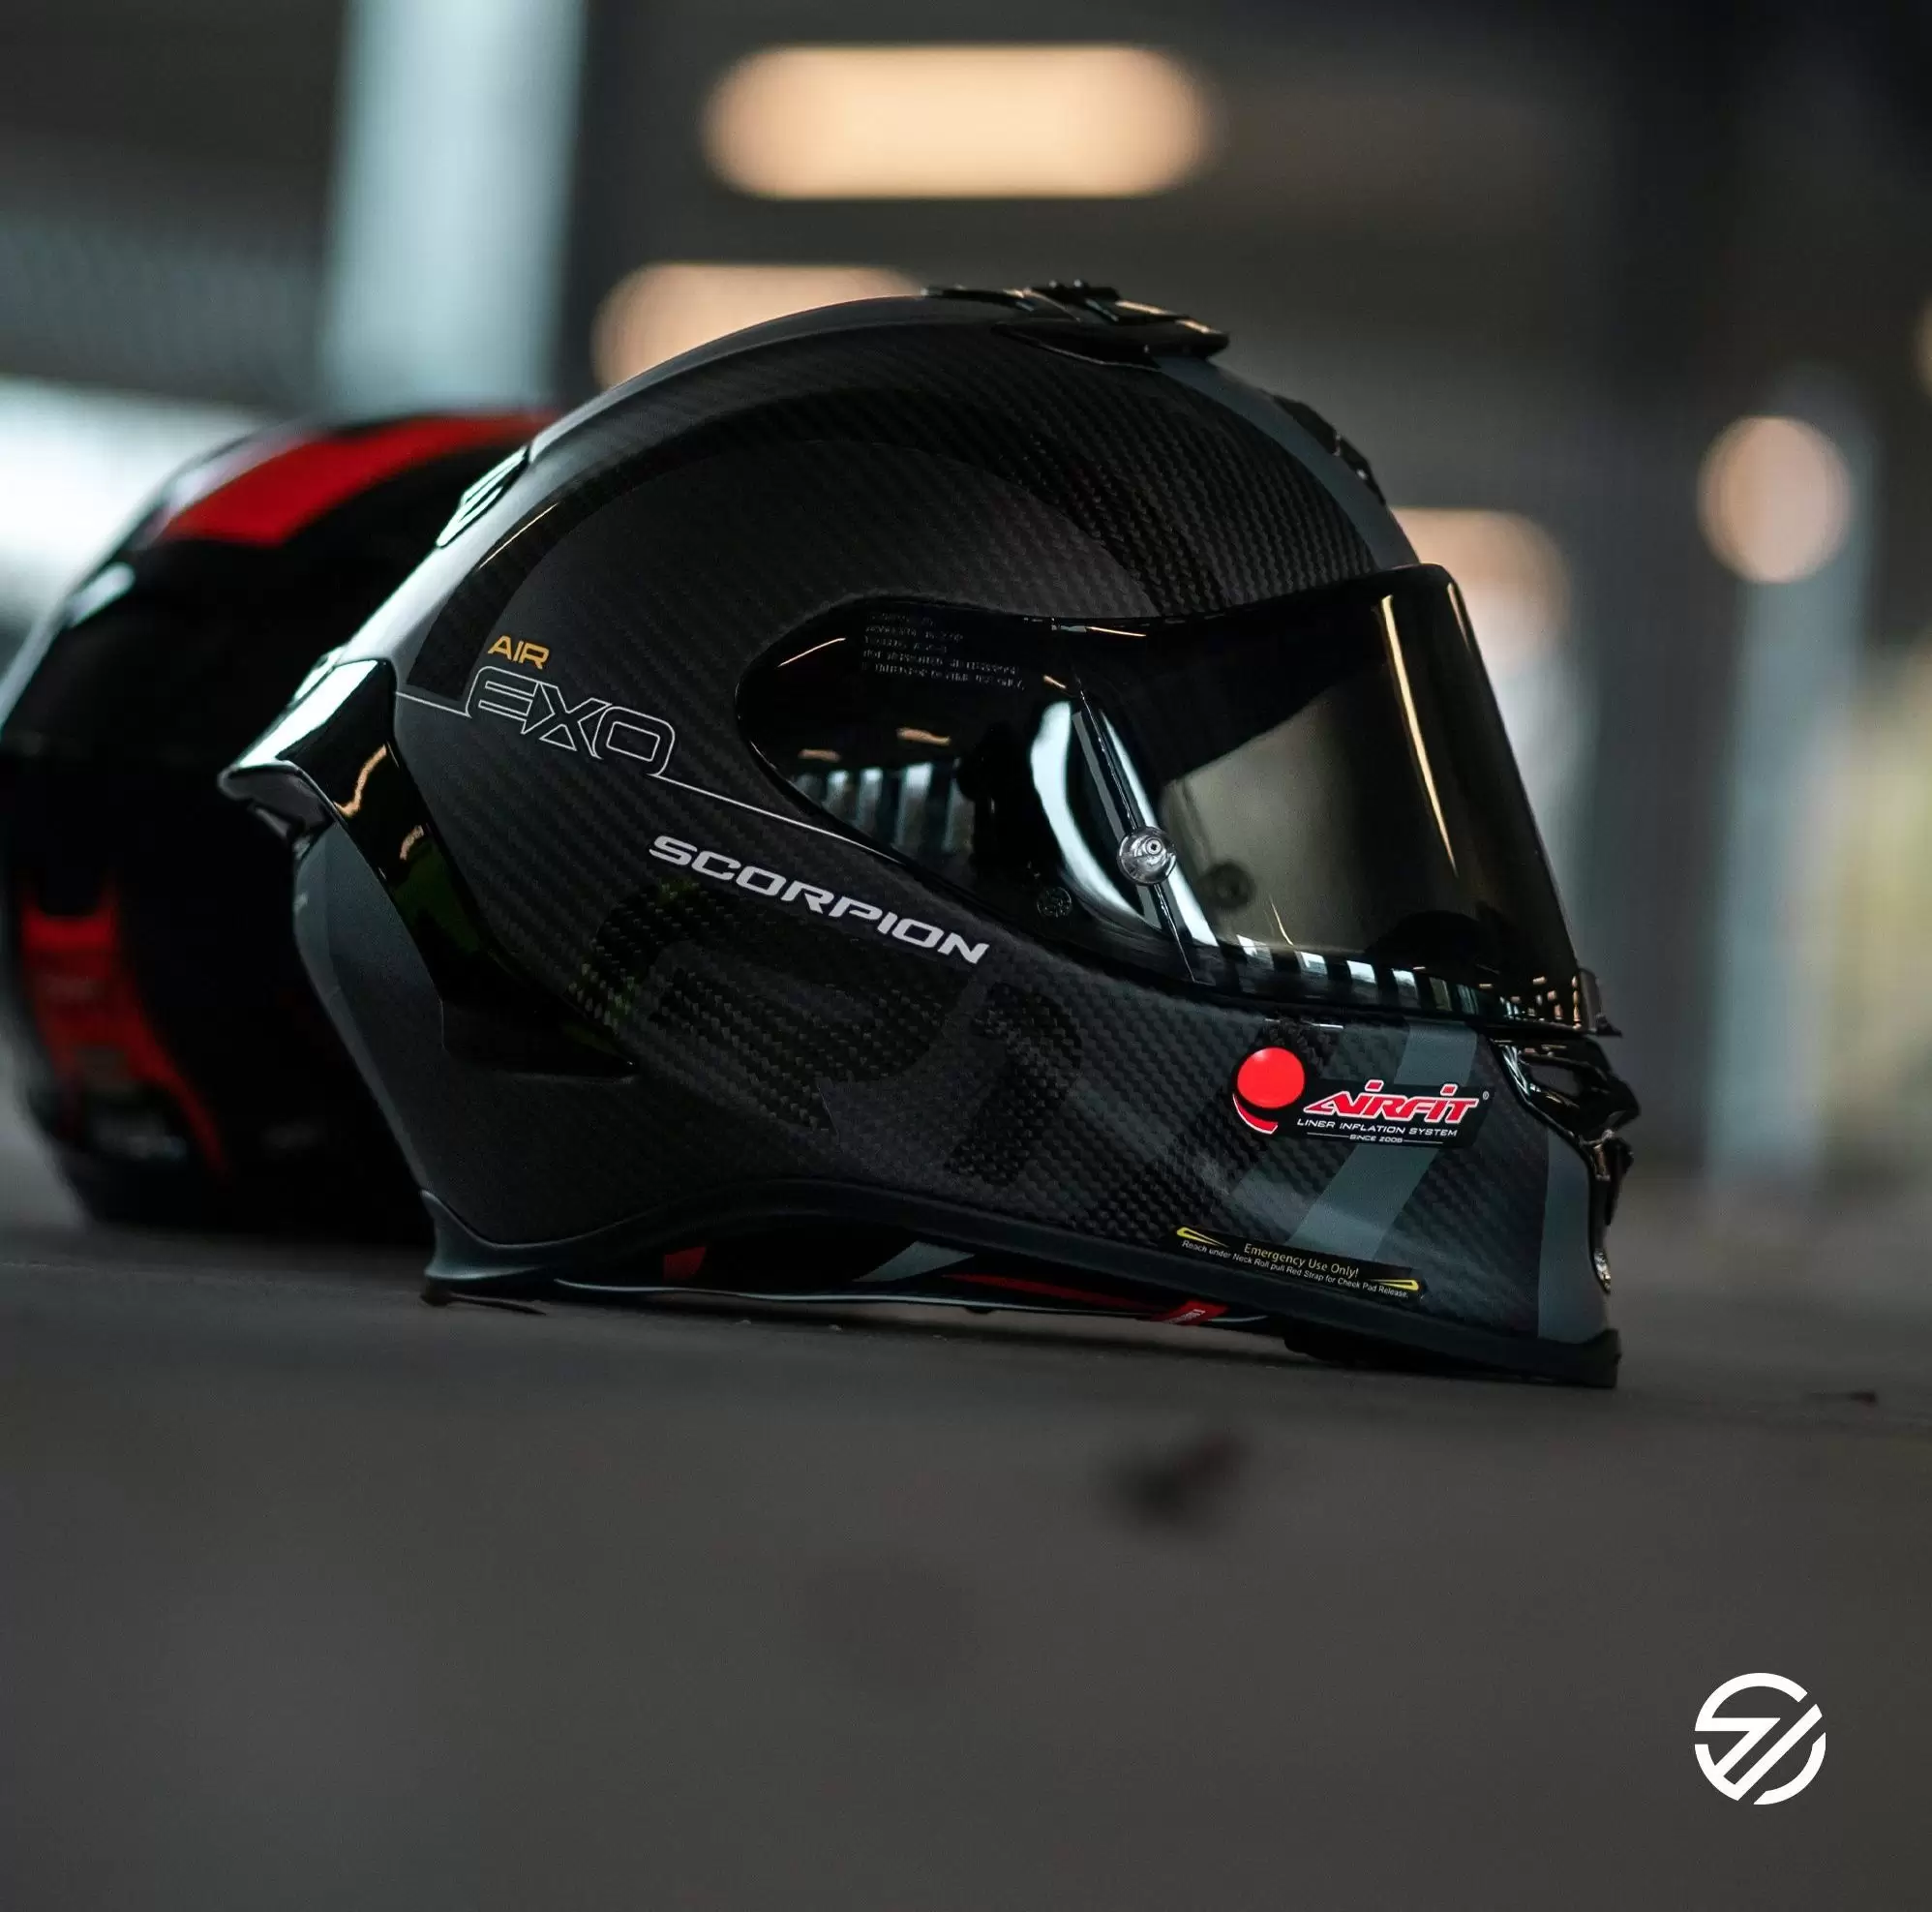 federatie creëren Gezamenlijke selectie Nieuwe Scorpion helmen voor 2021 - MKC Moto